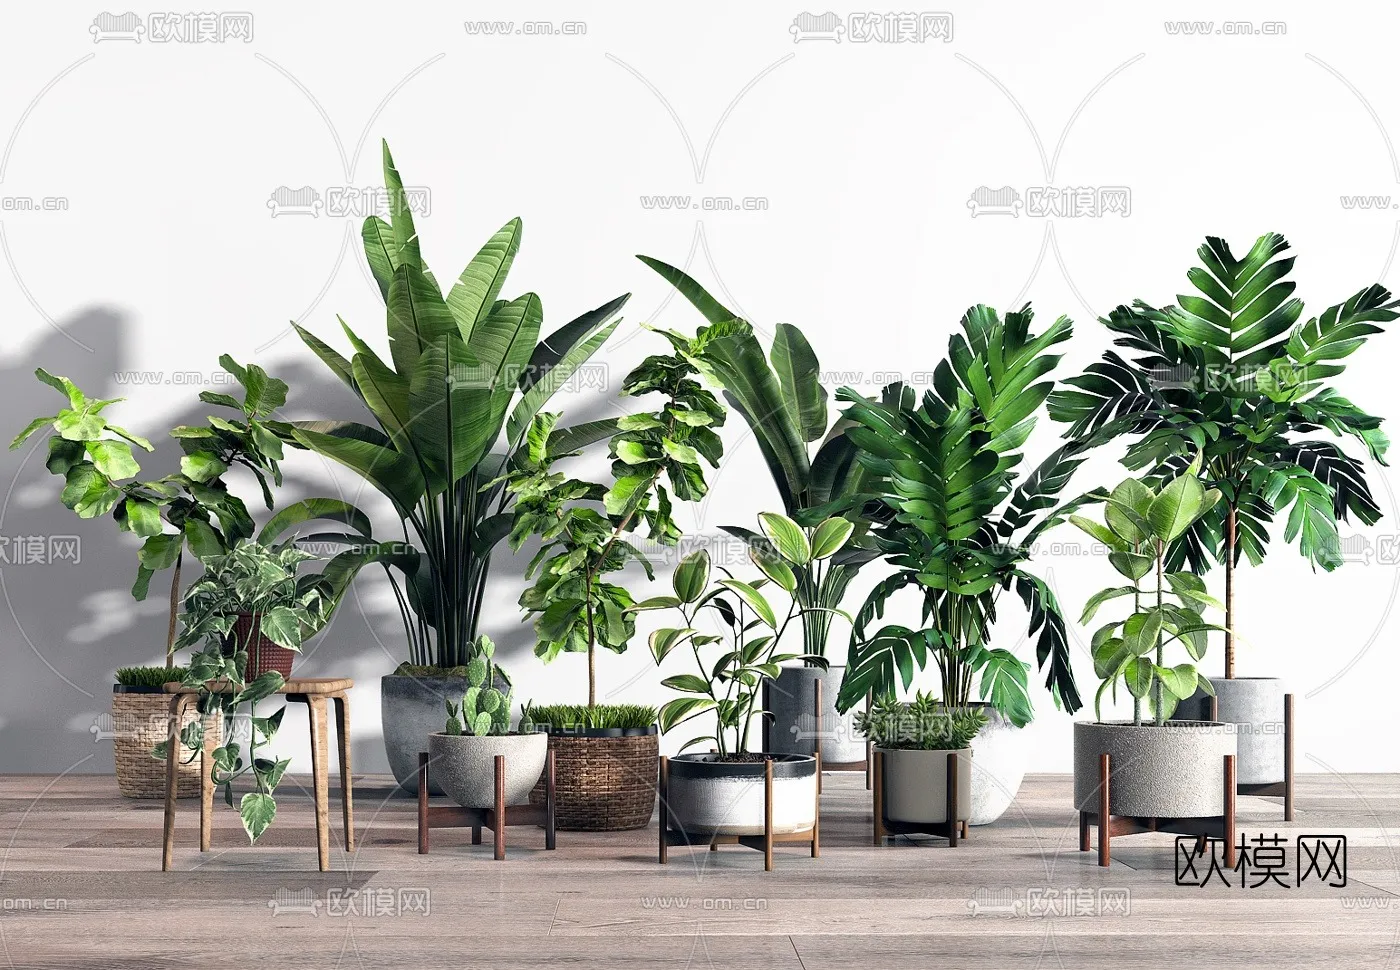 PLANT 3D MODELS – 018